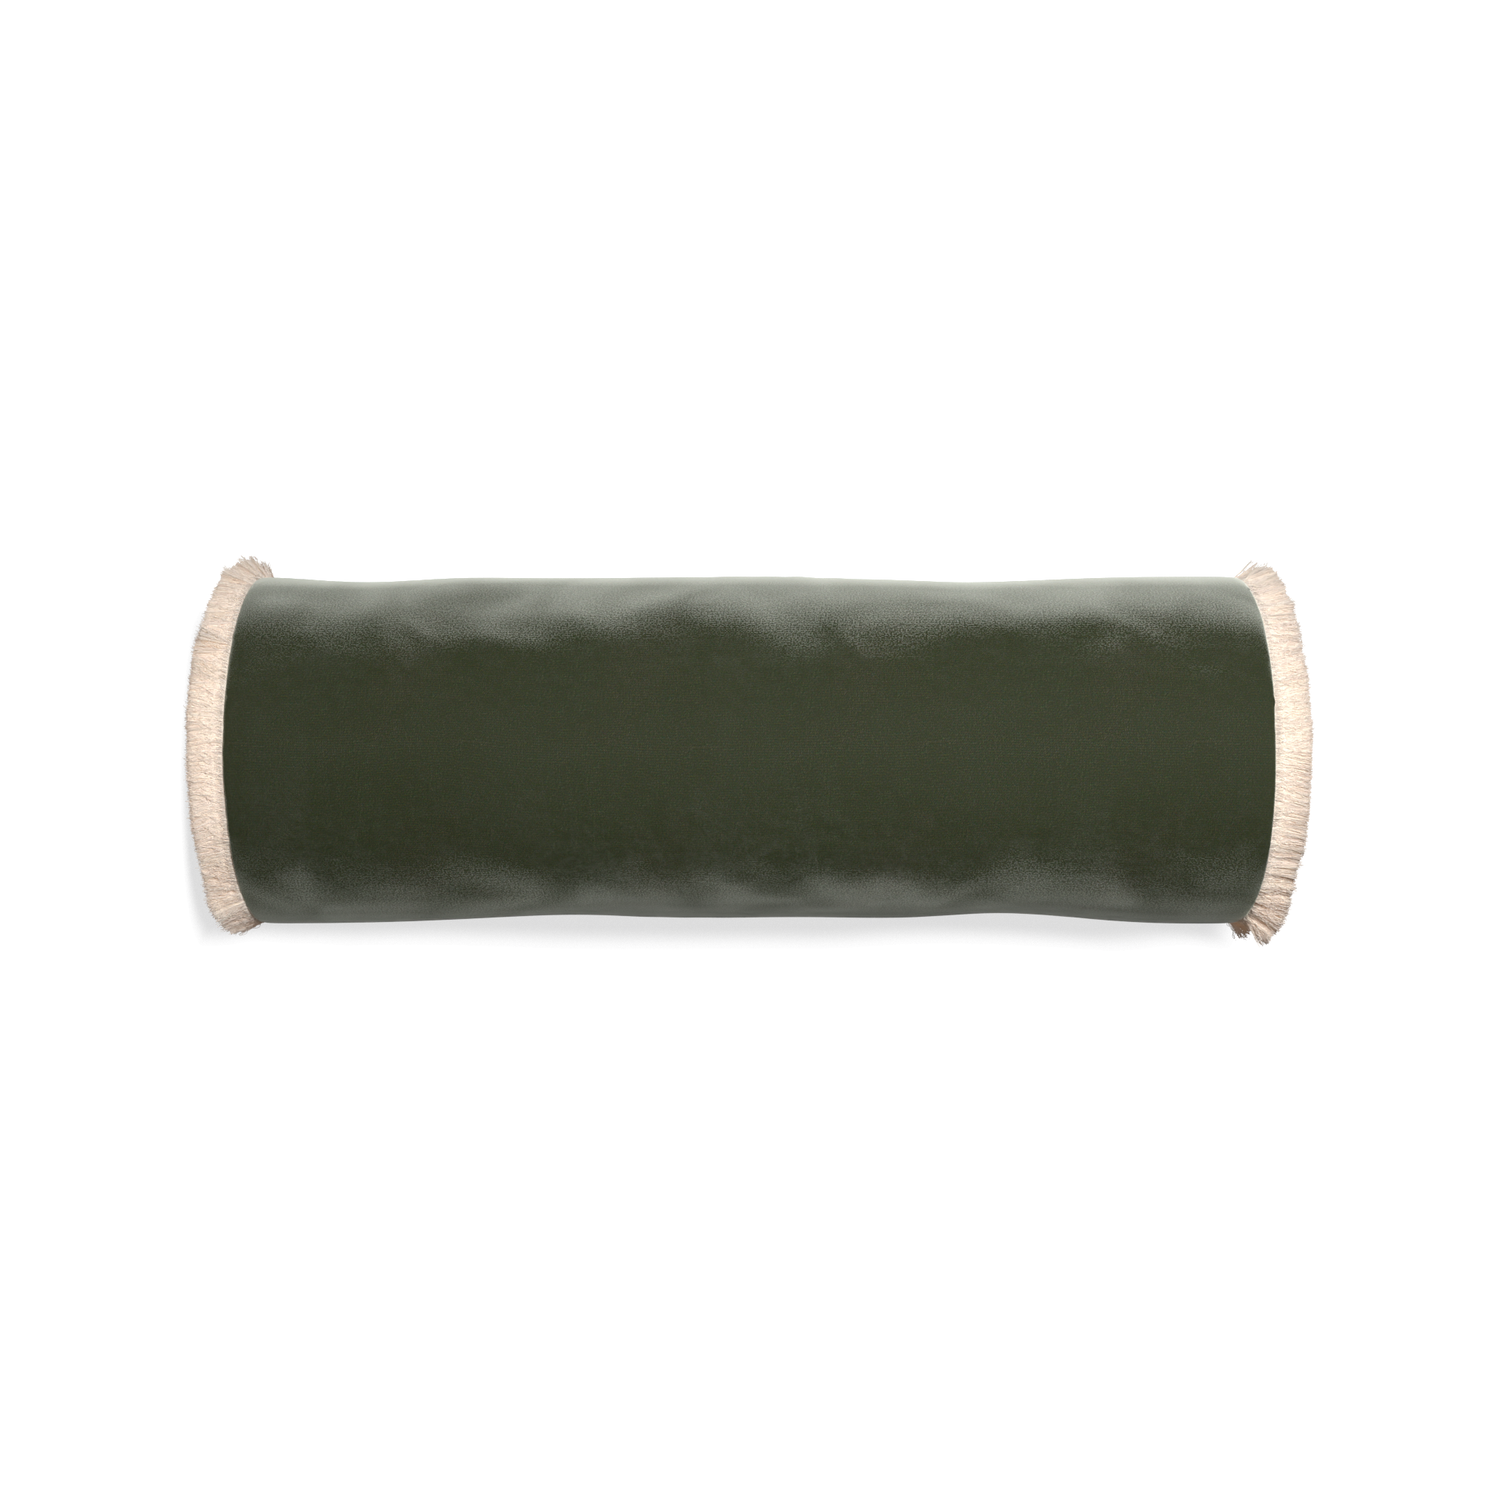 bolster fern green velvet pillow with cream fringe